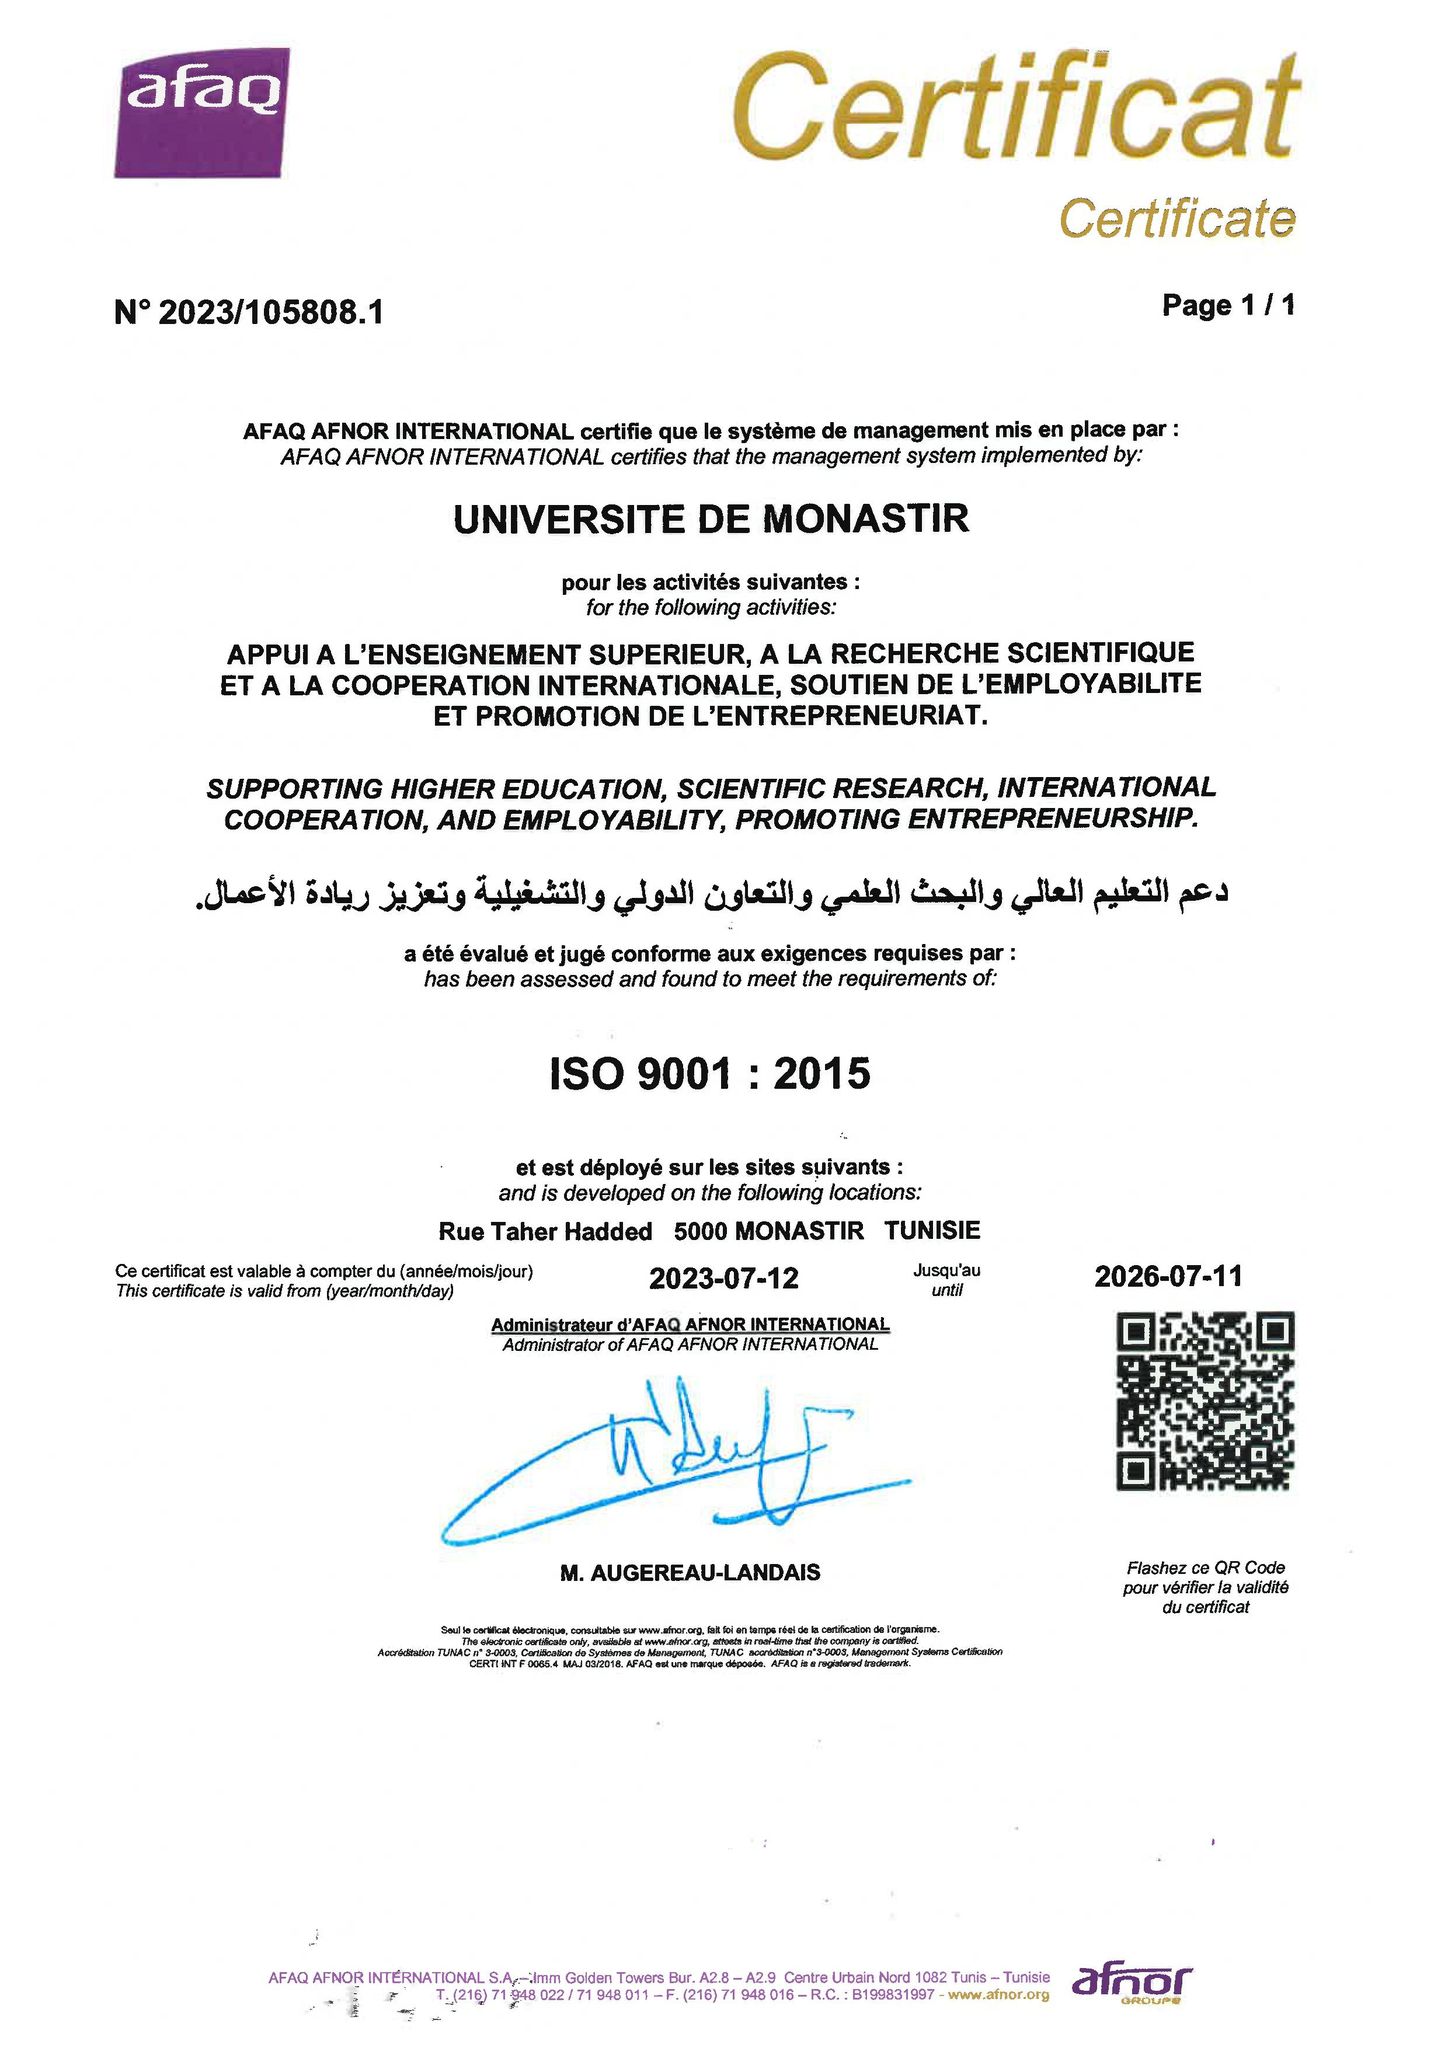 Certificat ISO 9001 version 2015